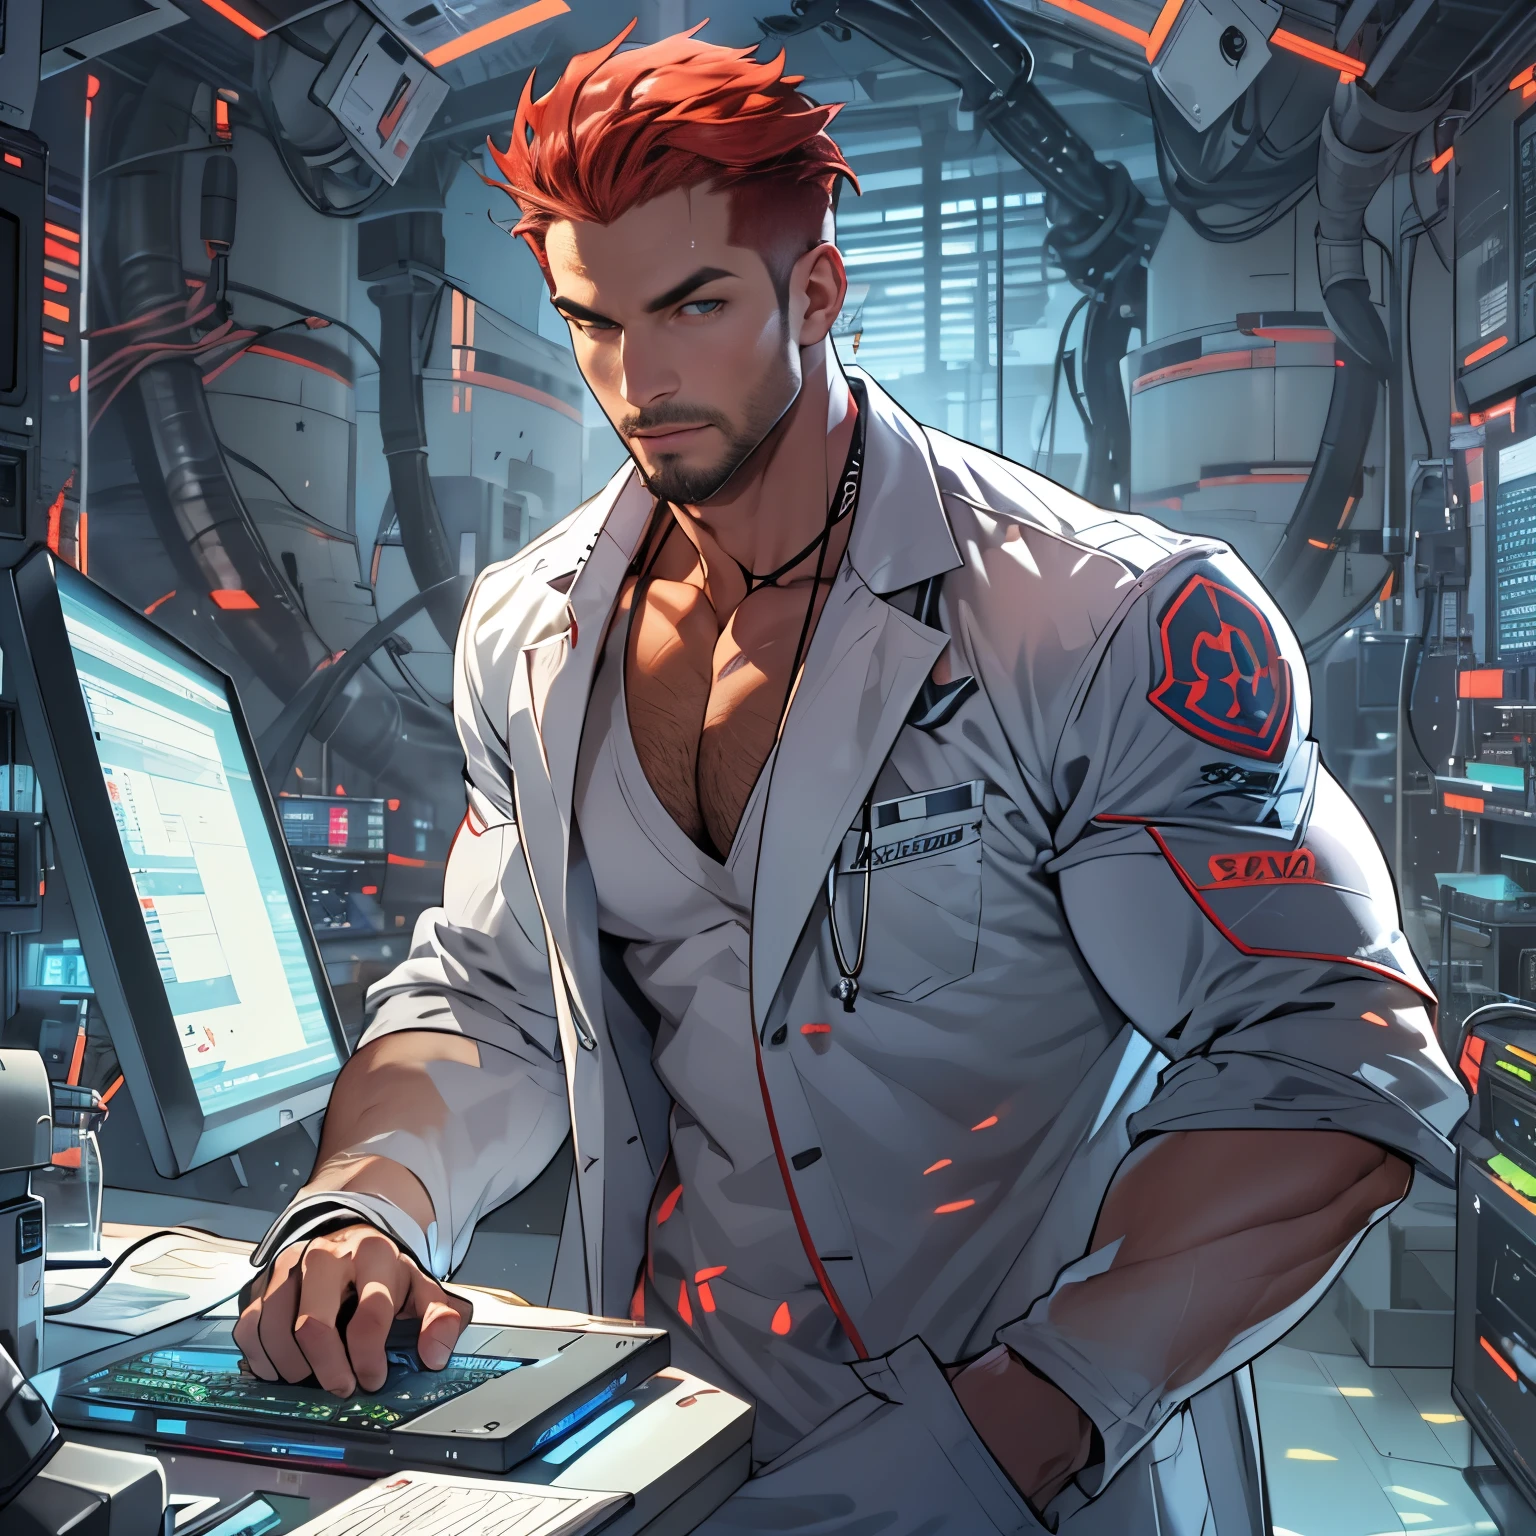 穿着暴露的实验室外套的英俊科学家, 短发, 茬, 红发, 肌肉发达, 研究超级计算机, 未来实验室设置, 专注, 皮肤很好, 大凸起, 大肌肉